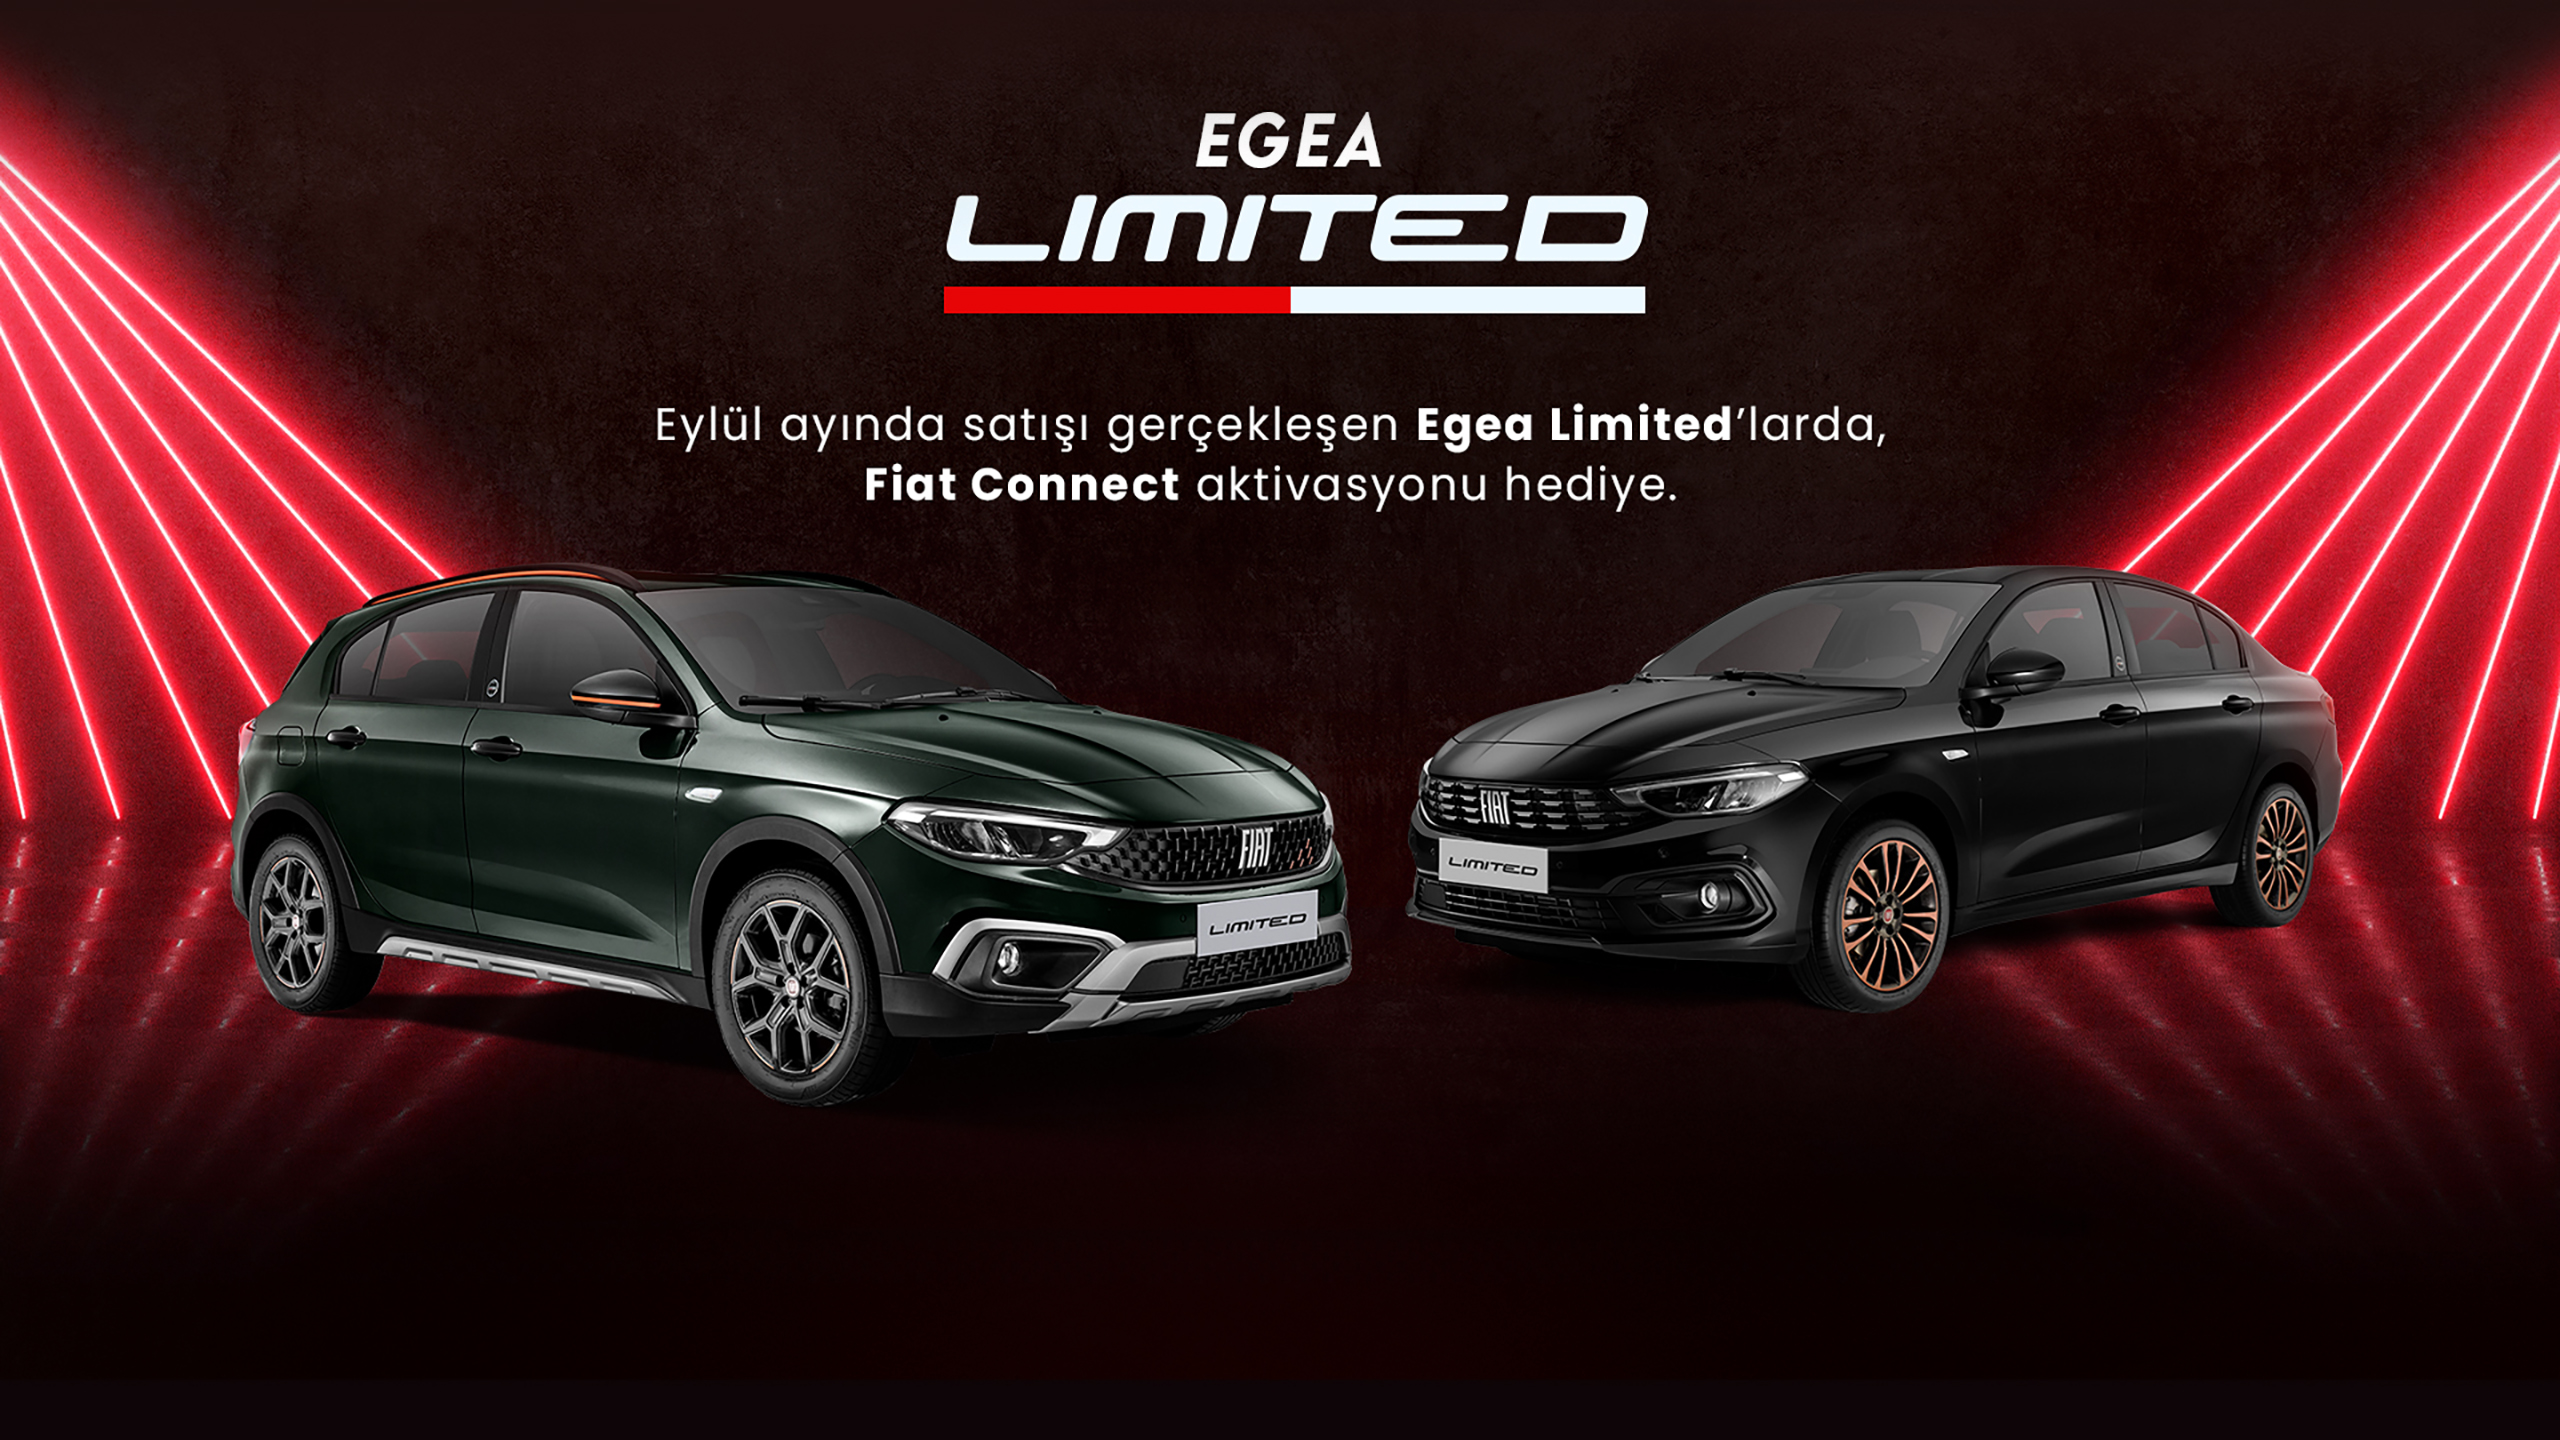 Fiat, popüler modeli Egea'nın sınırlı sayıda üretilen "Limited" versiyonlarını satışa koydu. Gelin hep beraber harika renk ve tarzlarıyla dikkat çeken Fiat Egea Sedan Limited ile Egea Cross Limited'in Eylül 2023 fiyat listesine bakalım.